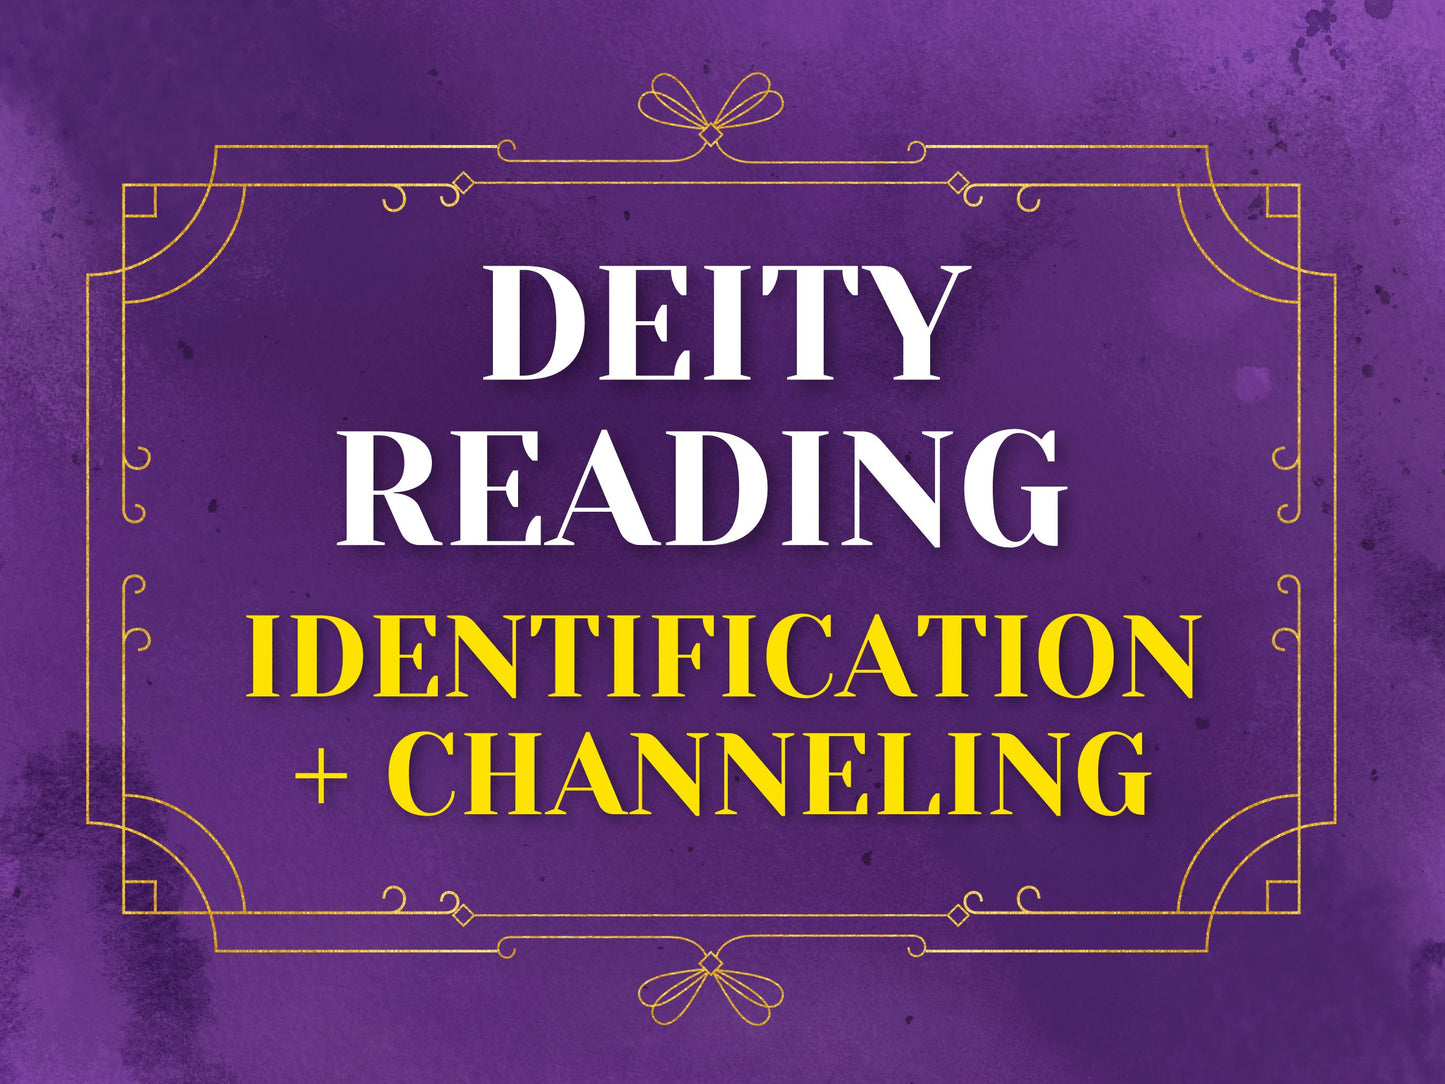 Deity Identification In Depth + Channeled Message